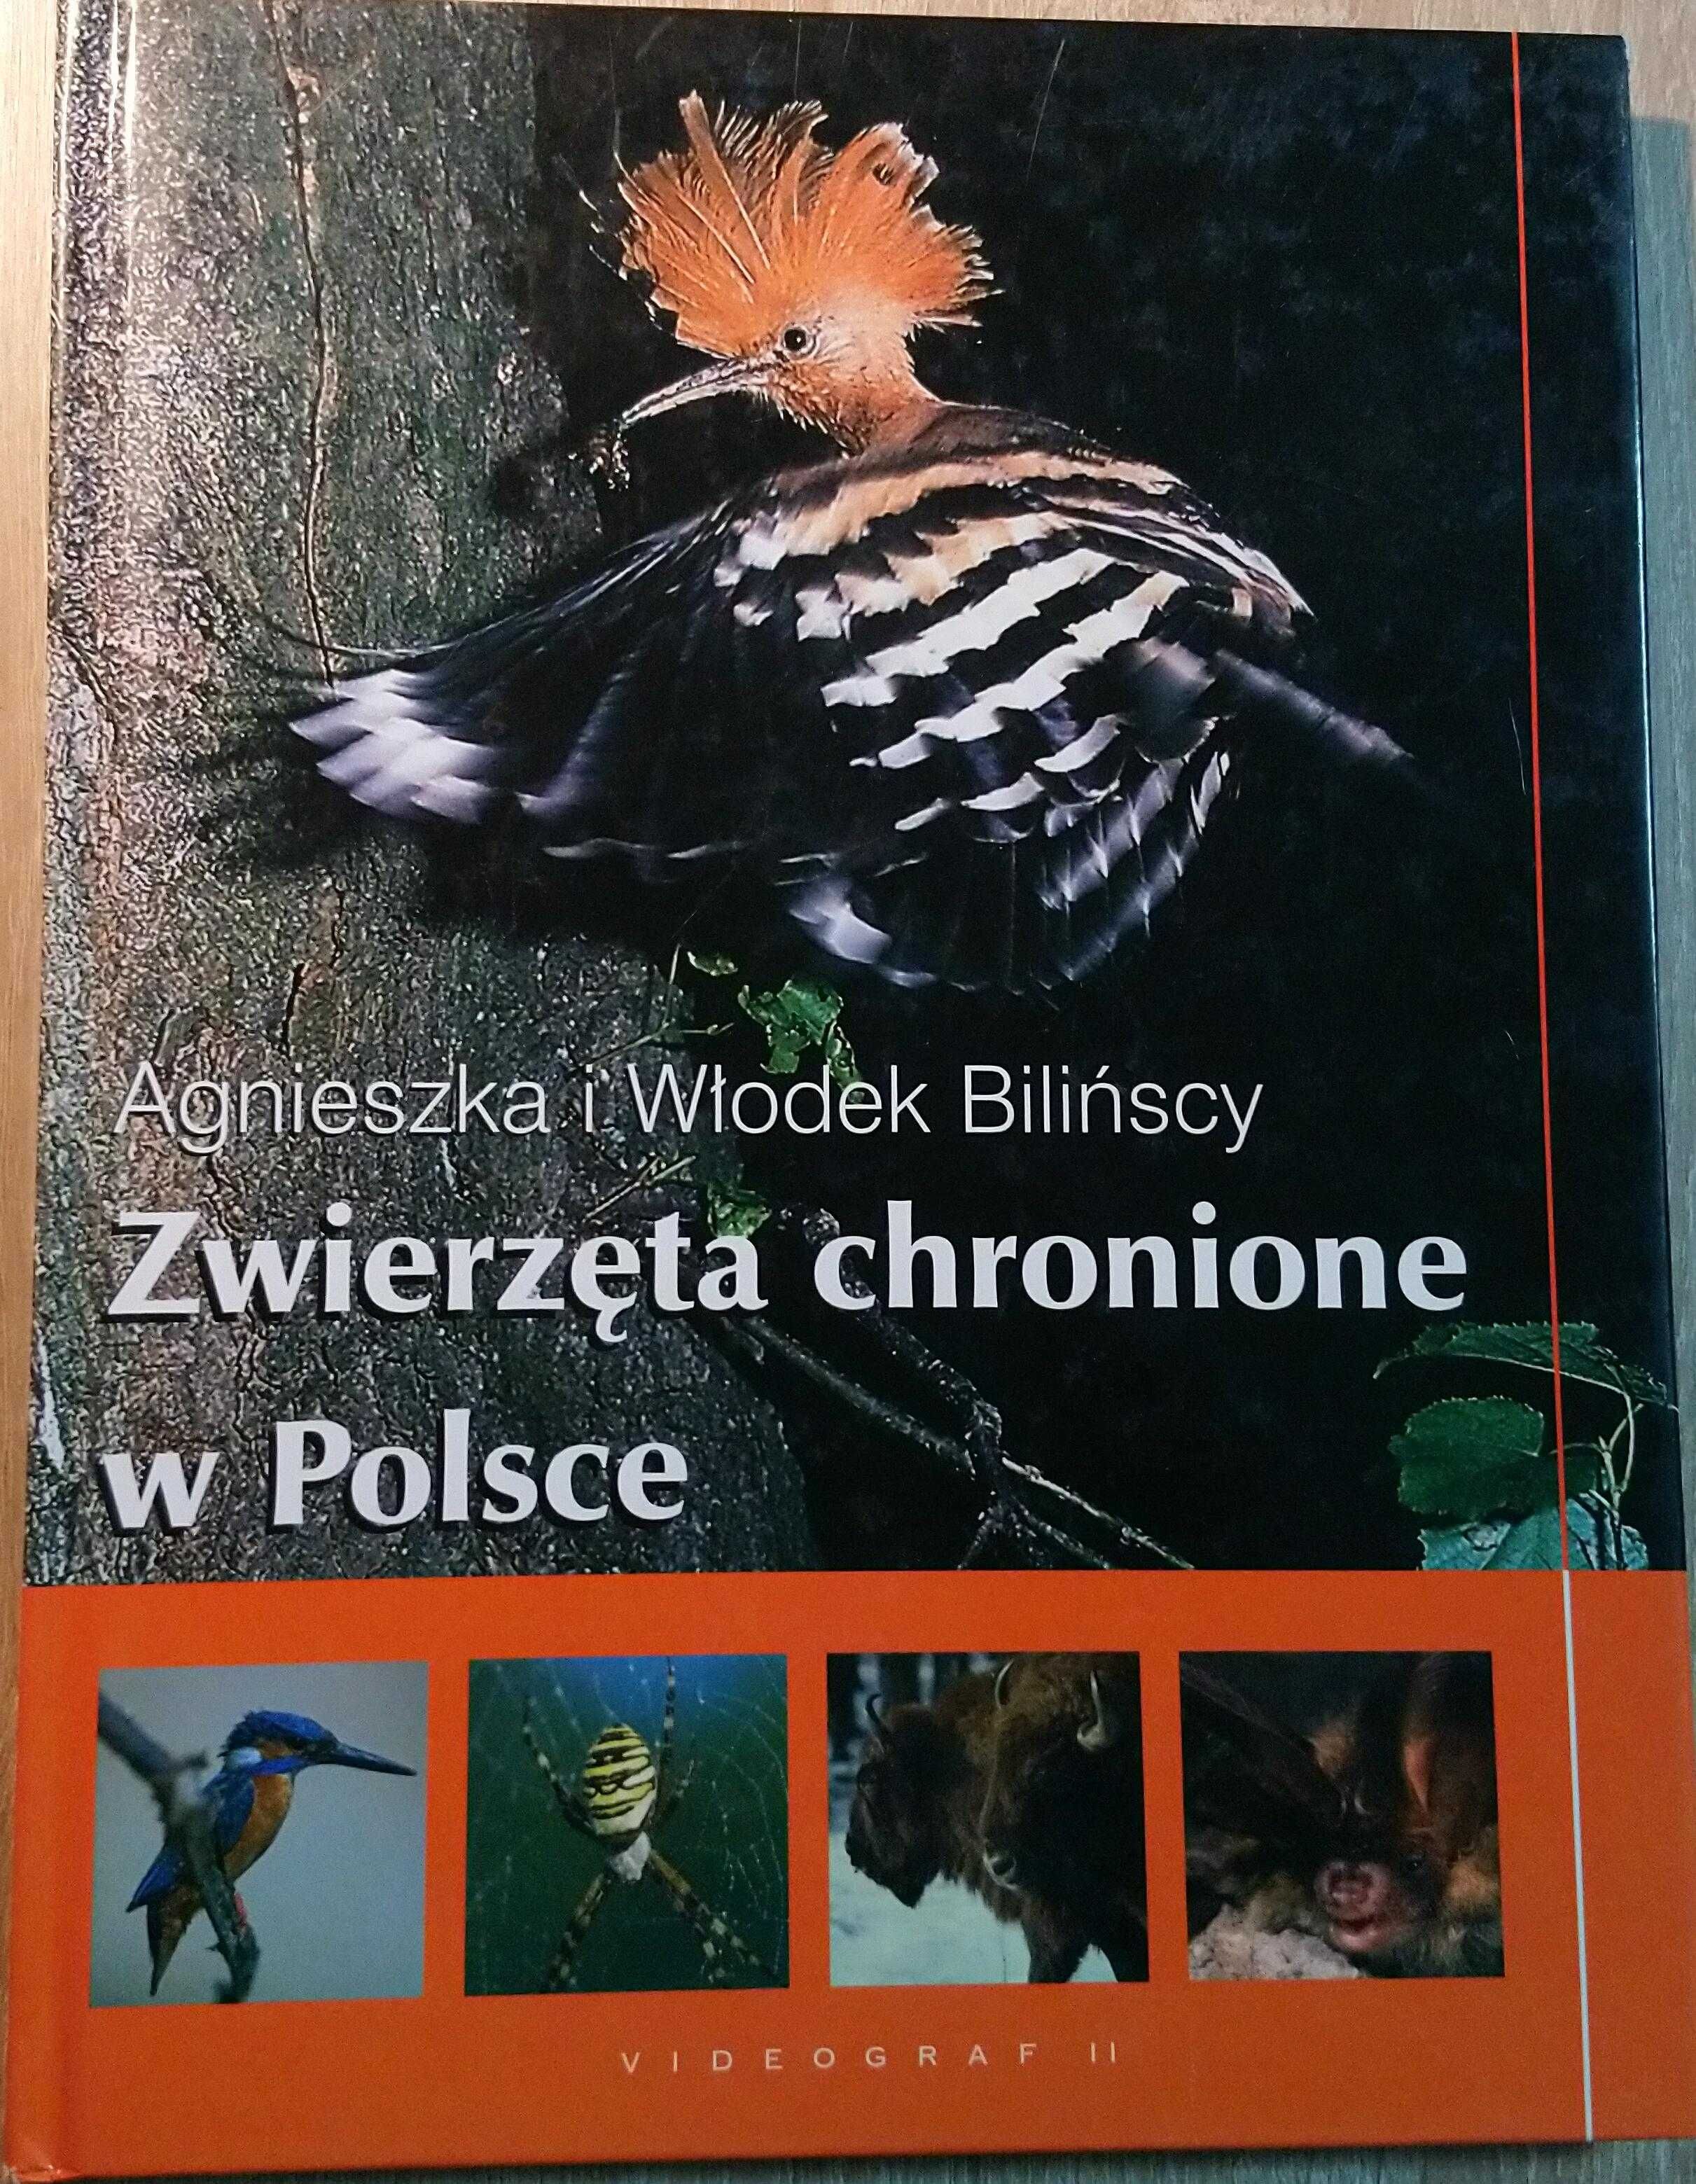 Dwie Encyklopedie-W. Encyklopedia Zwierząt i Zwierzęta Chronione w Pl